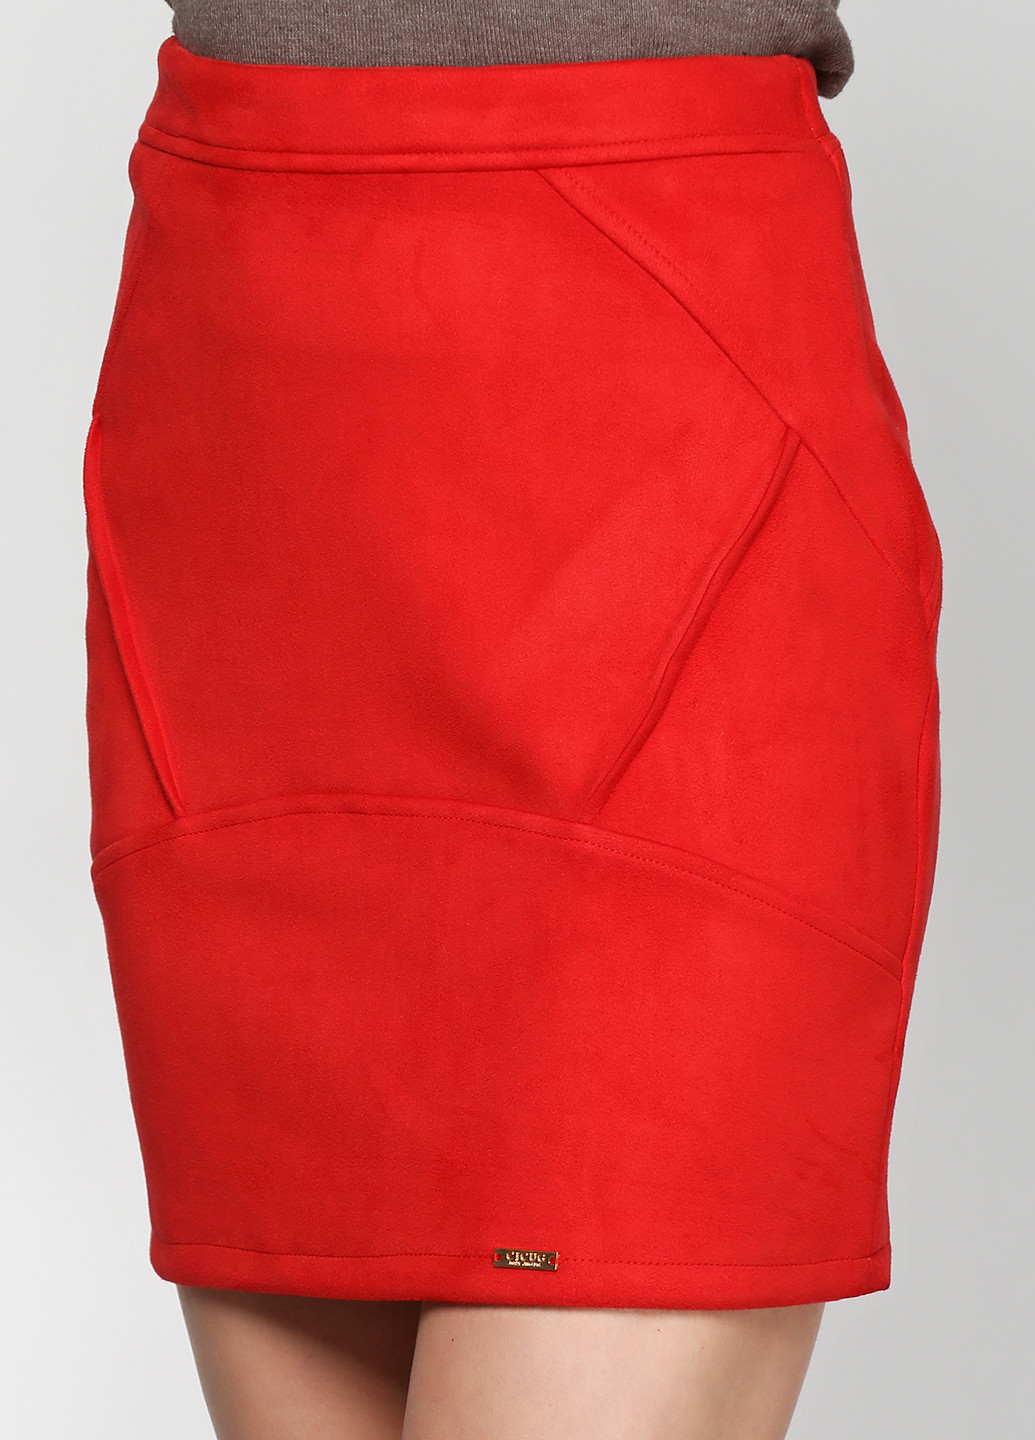 Красная офисная однотонная юбка Alvina мини